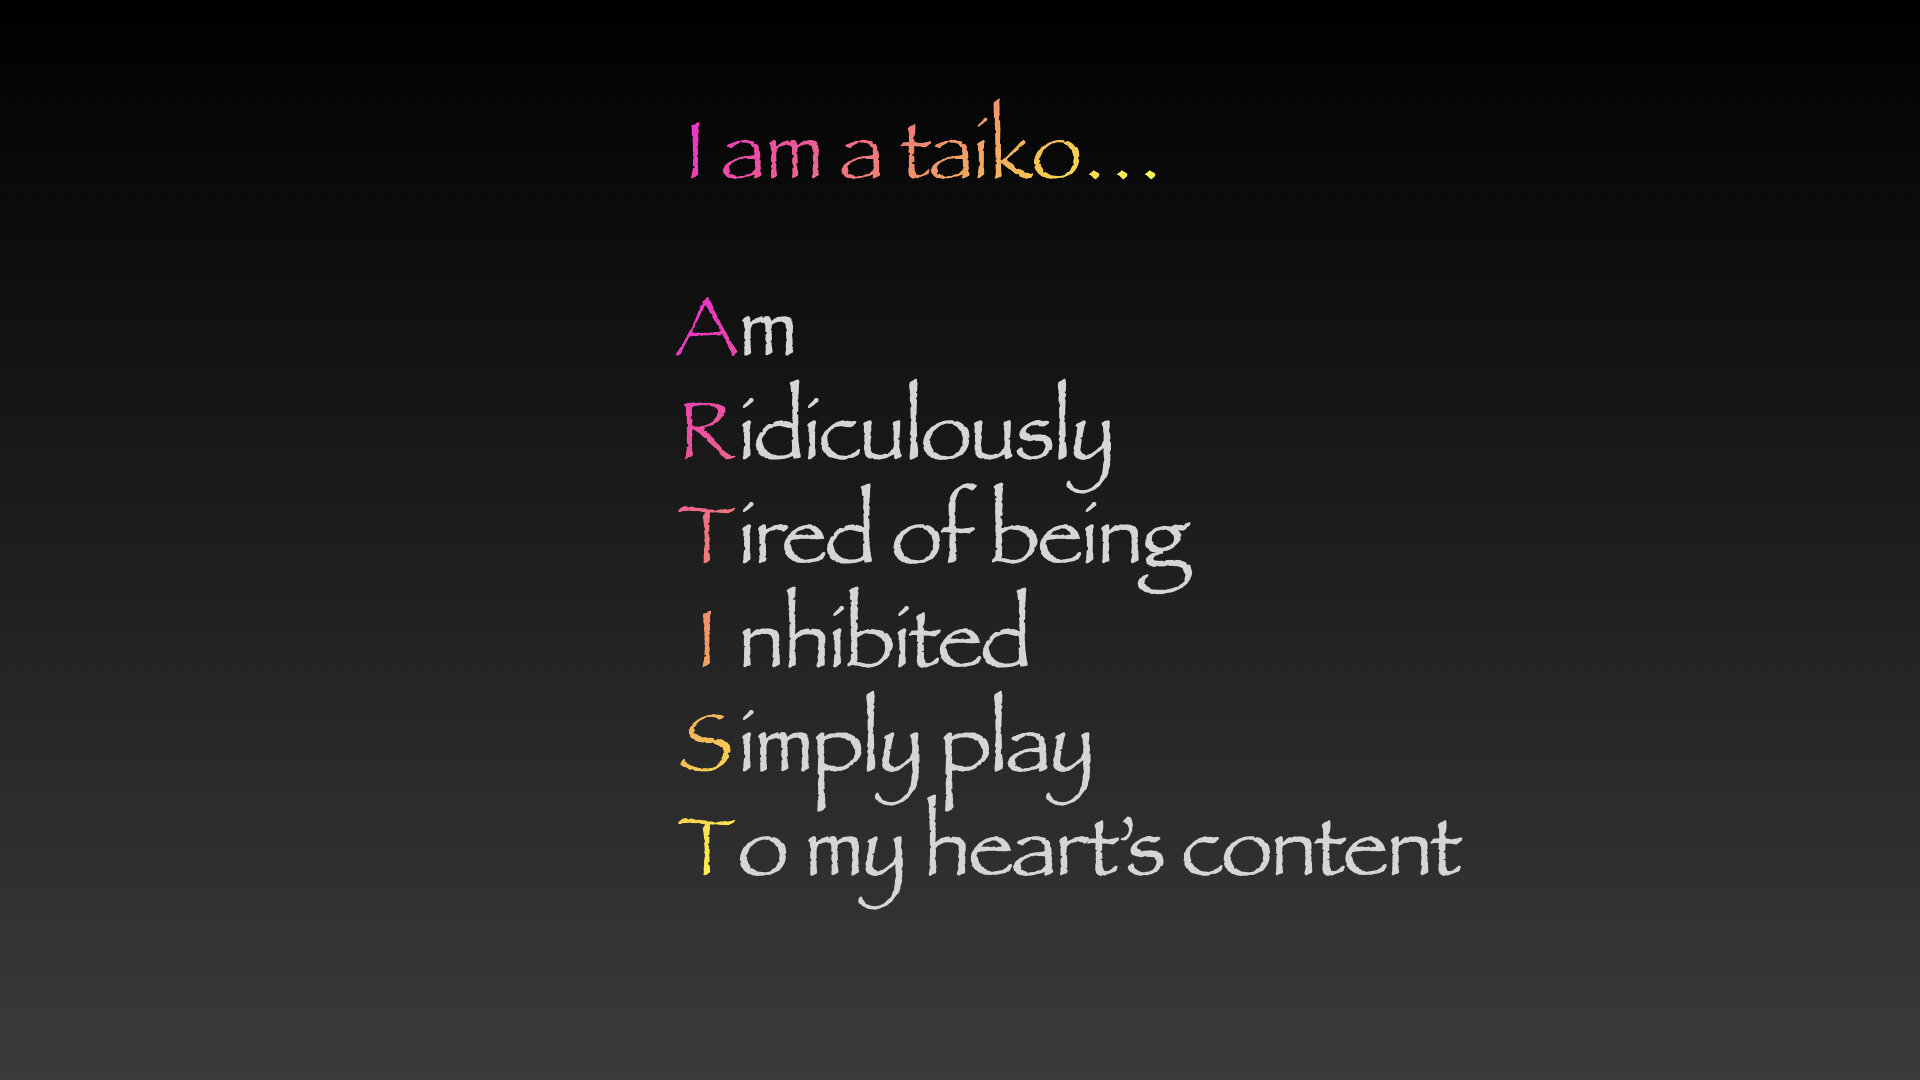 I am a taiko artist pear 06252020.008.jpeg